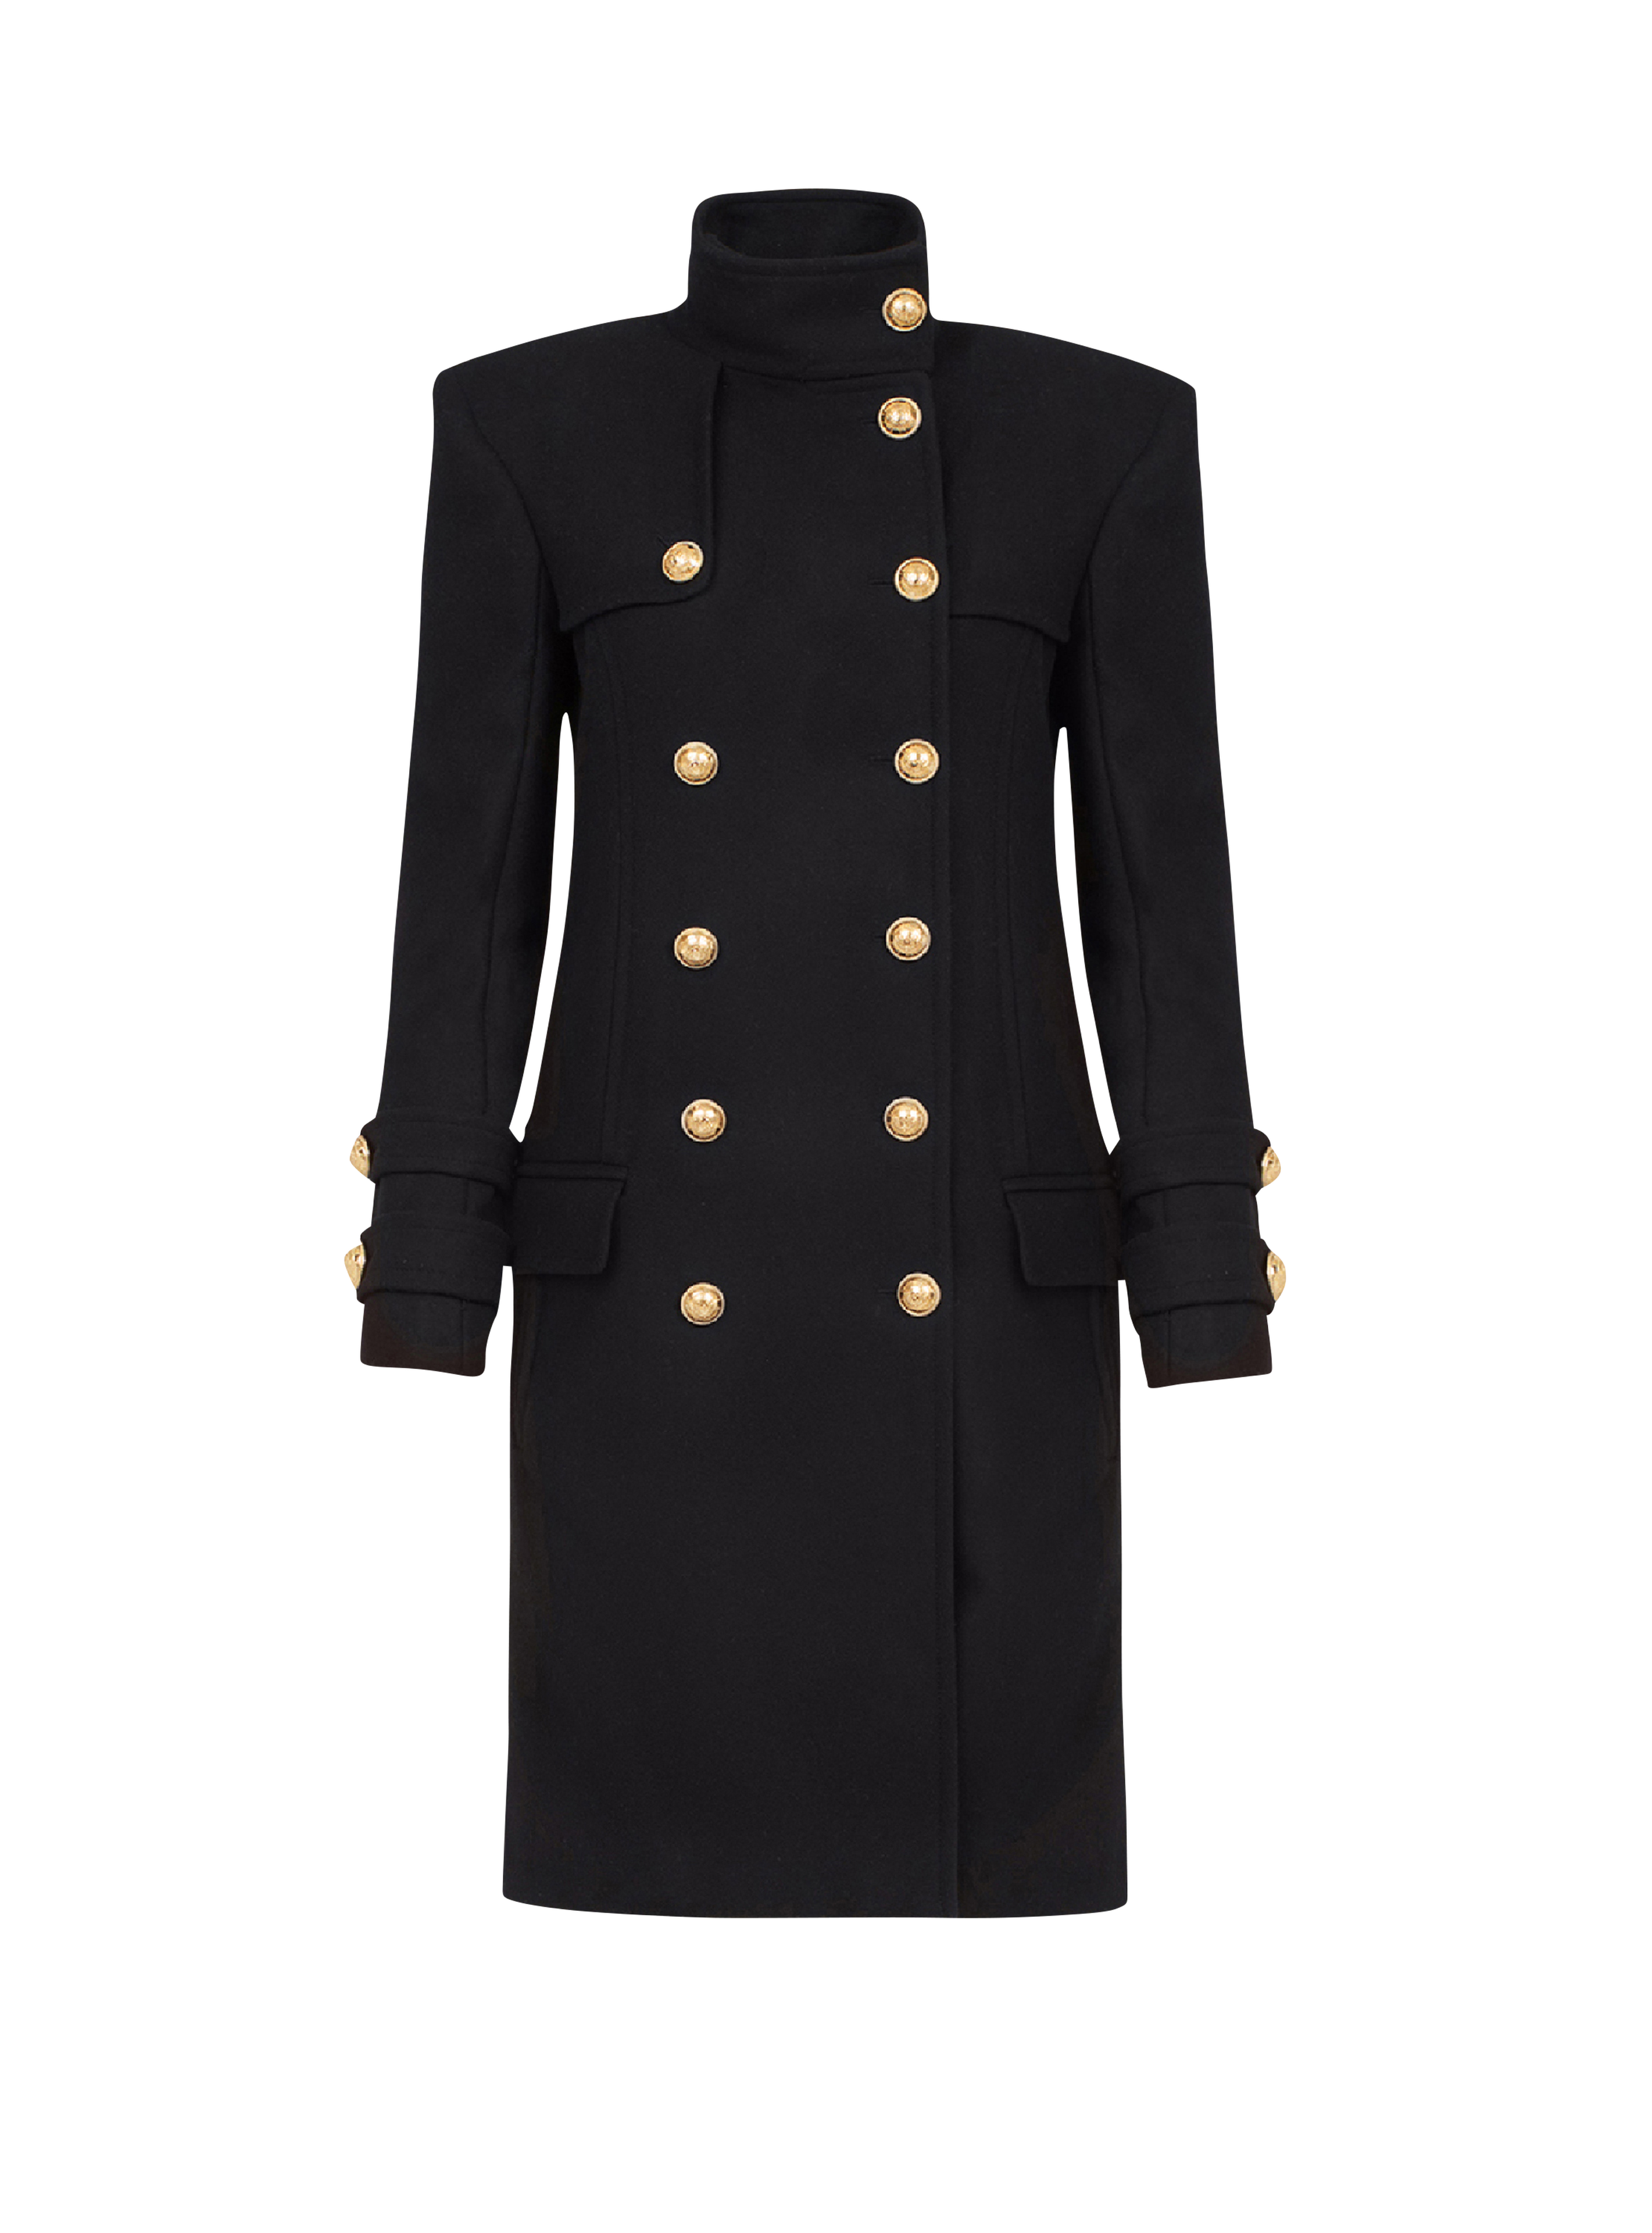 Manteau long en laine et cachemire à double boutonnage doré, noir